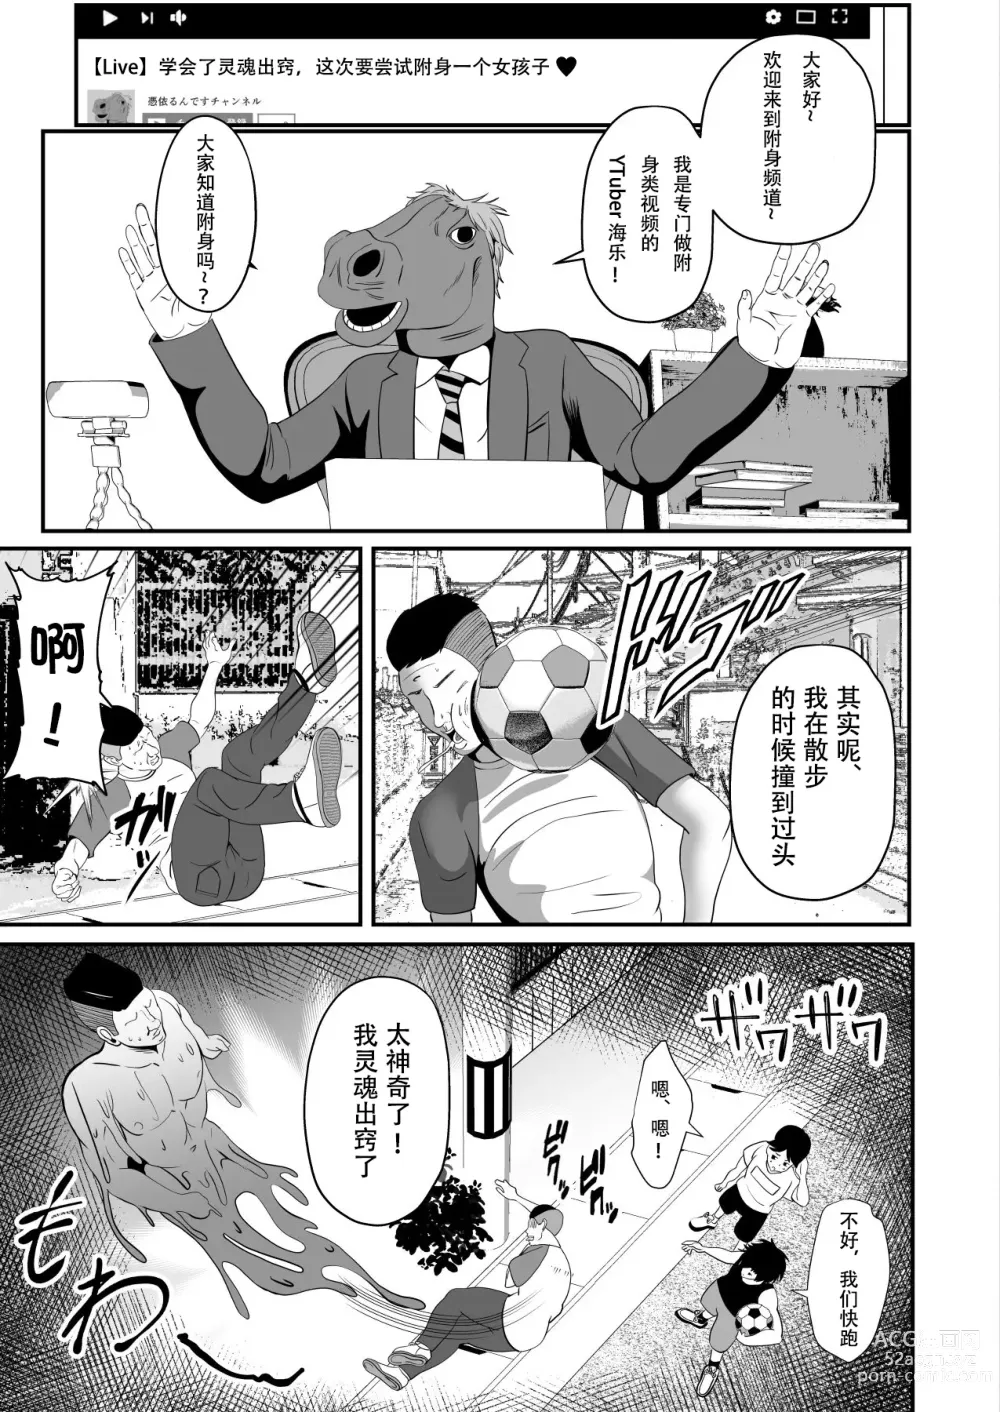 Page 4 of doujinshi Hyoui-kei YTuber ~Ubatta Karada de Haishin Katsudou~